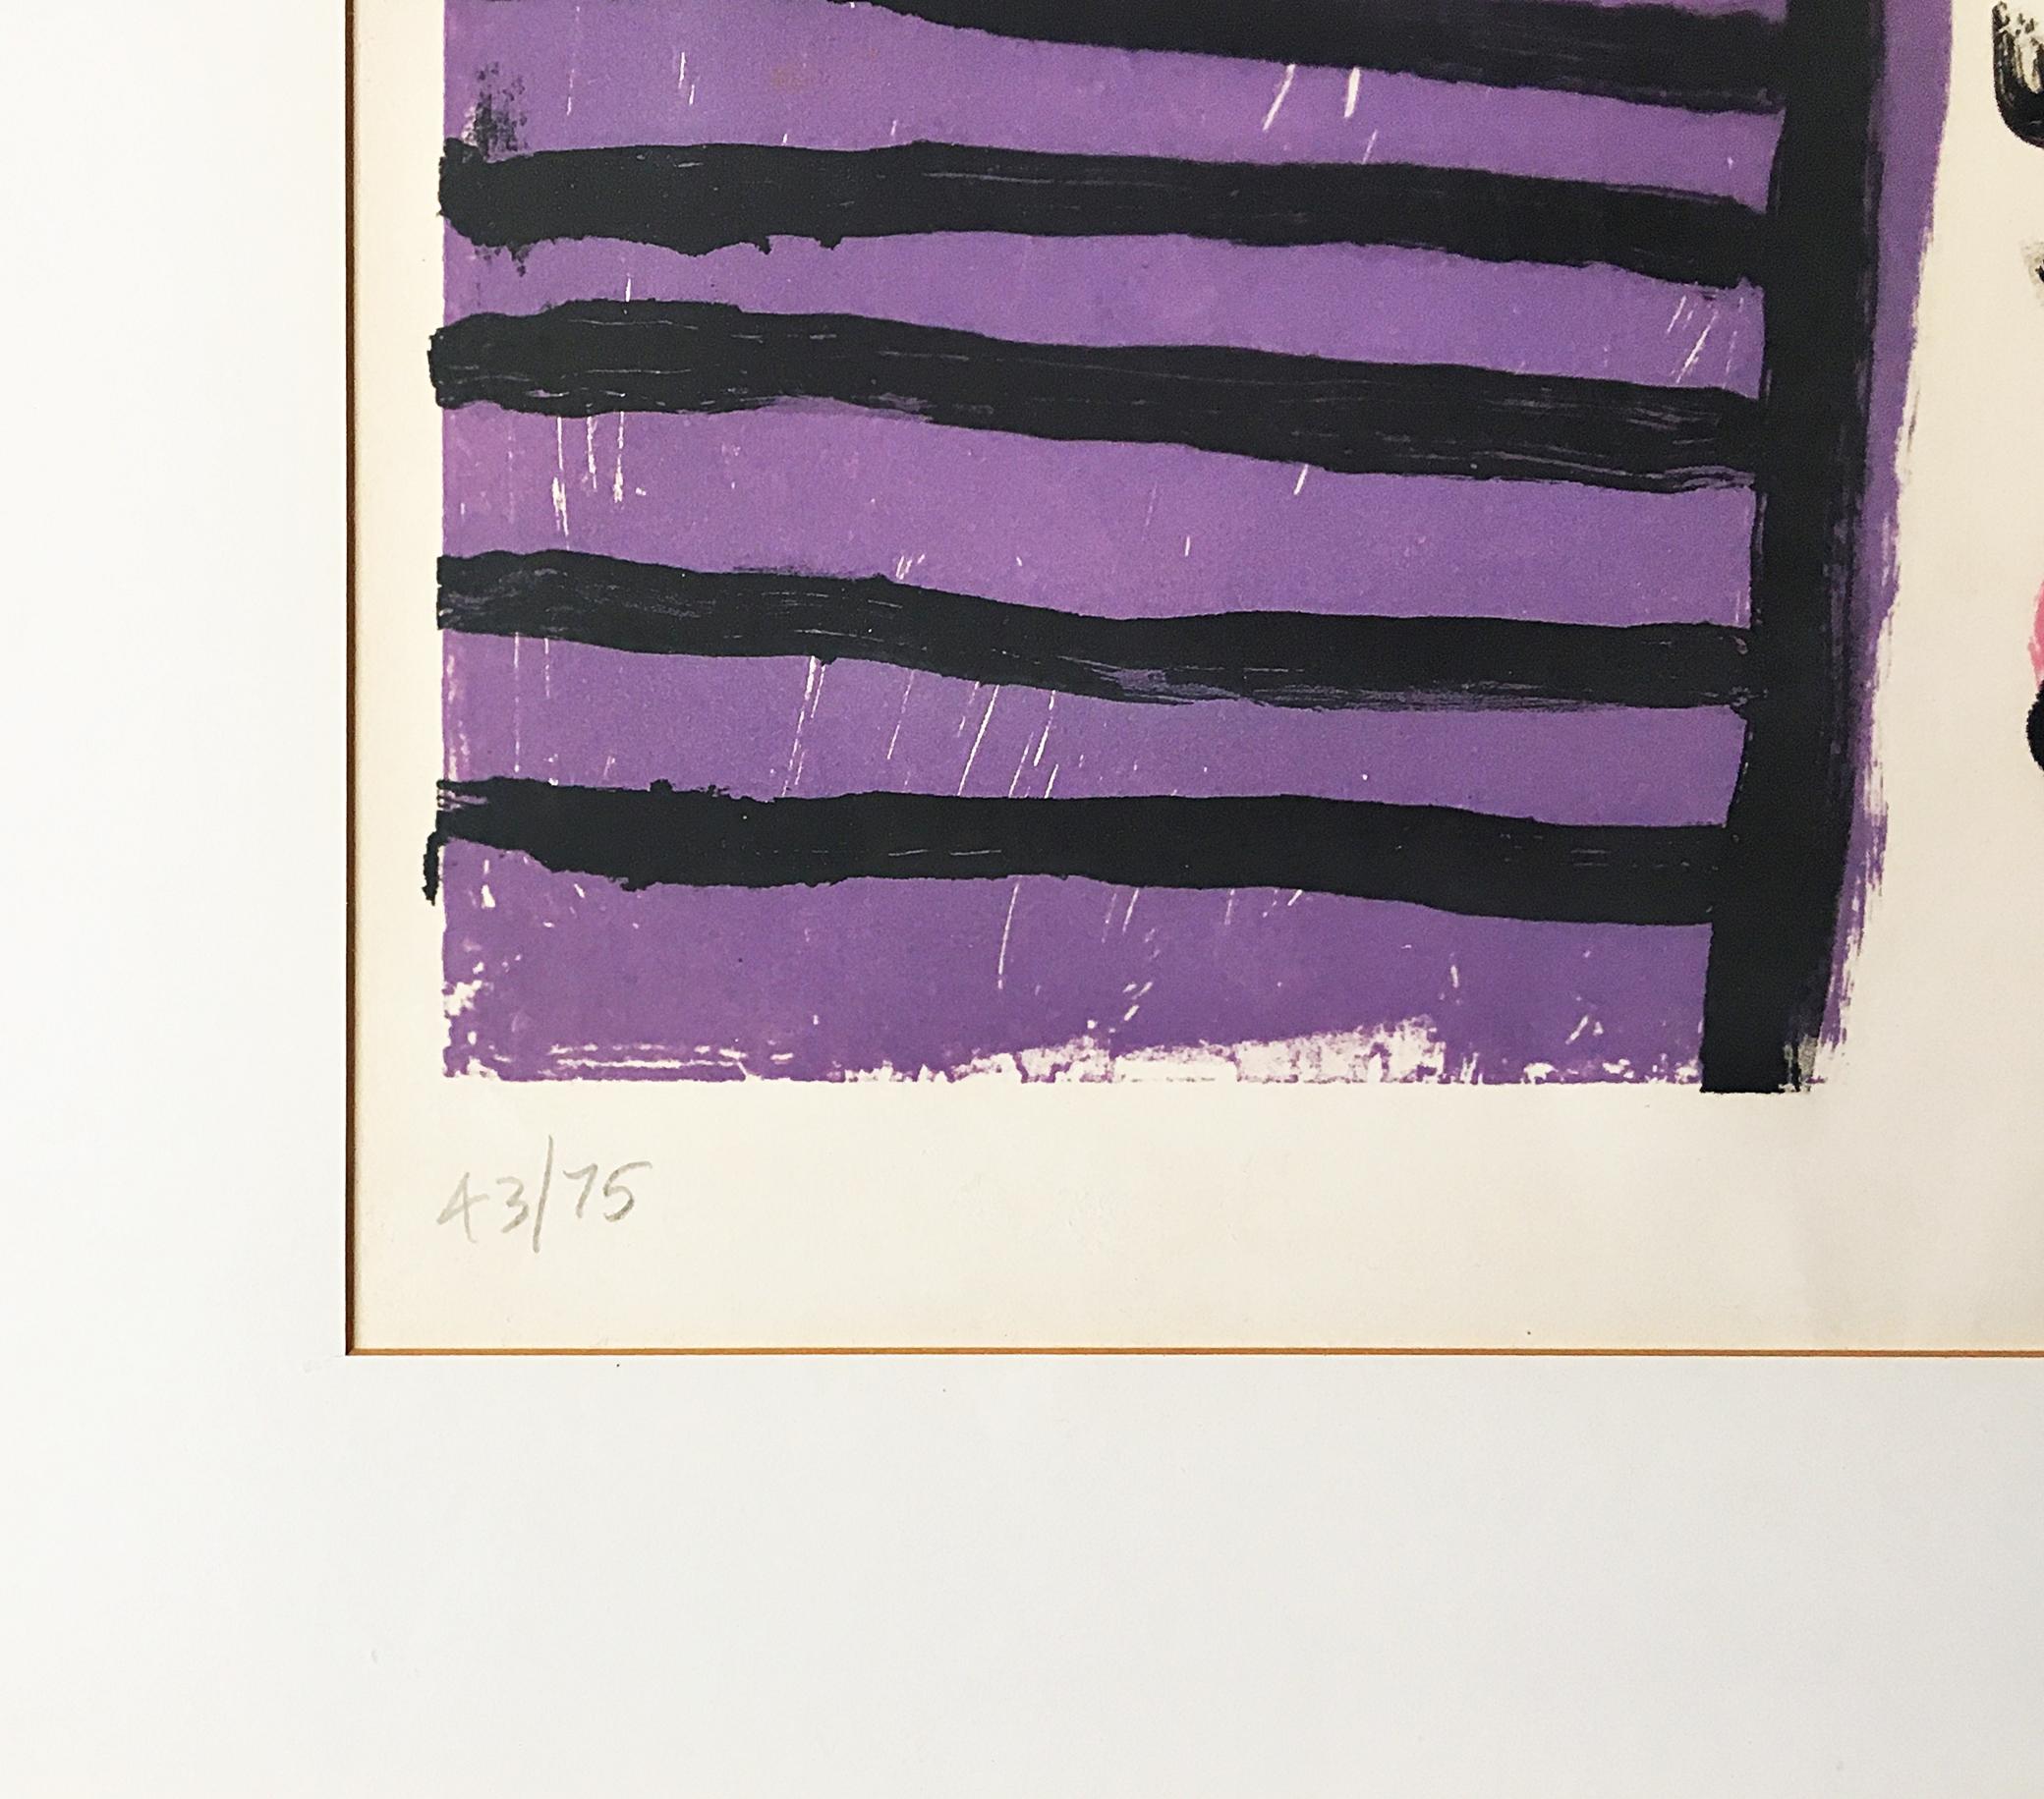 Alan Davie
Bruits d'oiseaux (avec l'étiquette originale de la Martha Jackson Gallery), 1964
Lithographie sur papier vélin
Signé à la main et numéroté 43 d'une édition de 75 au recto. Cette œuvre est dans son cadre original d'époque. Label de la